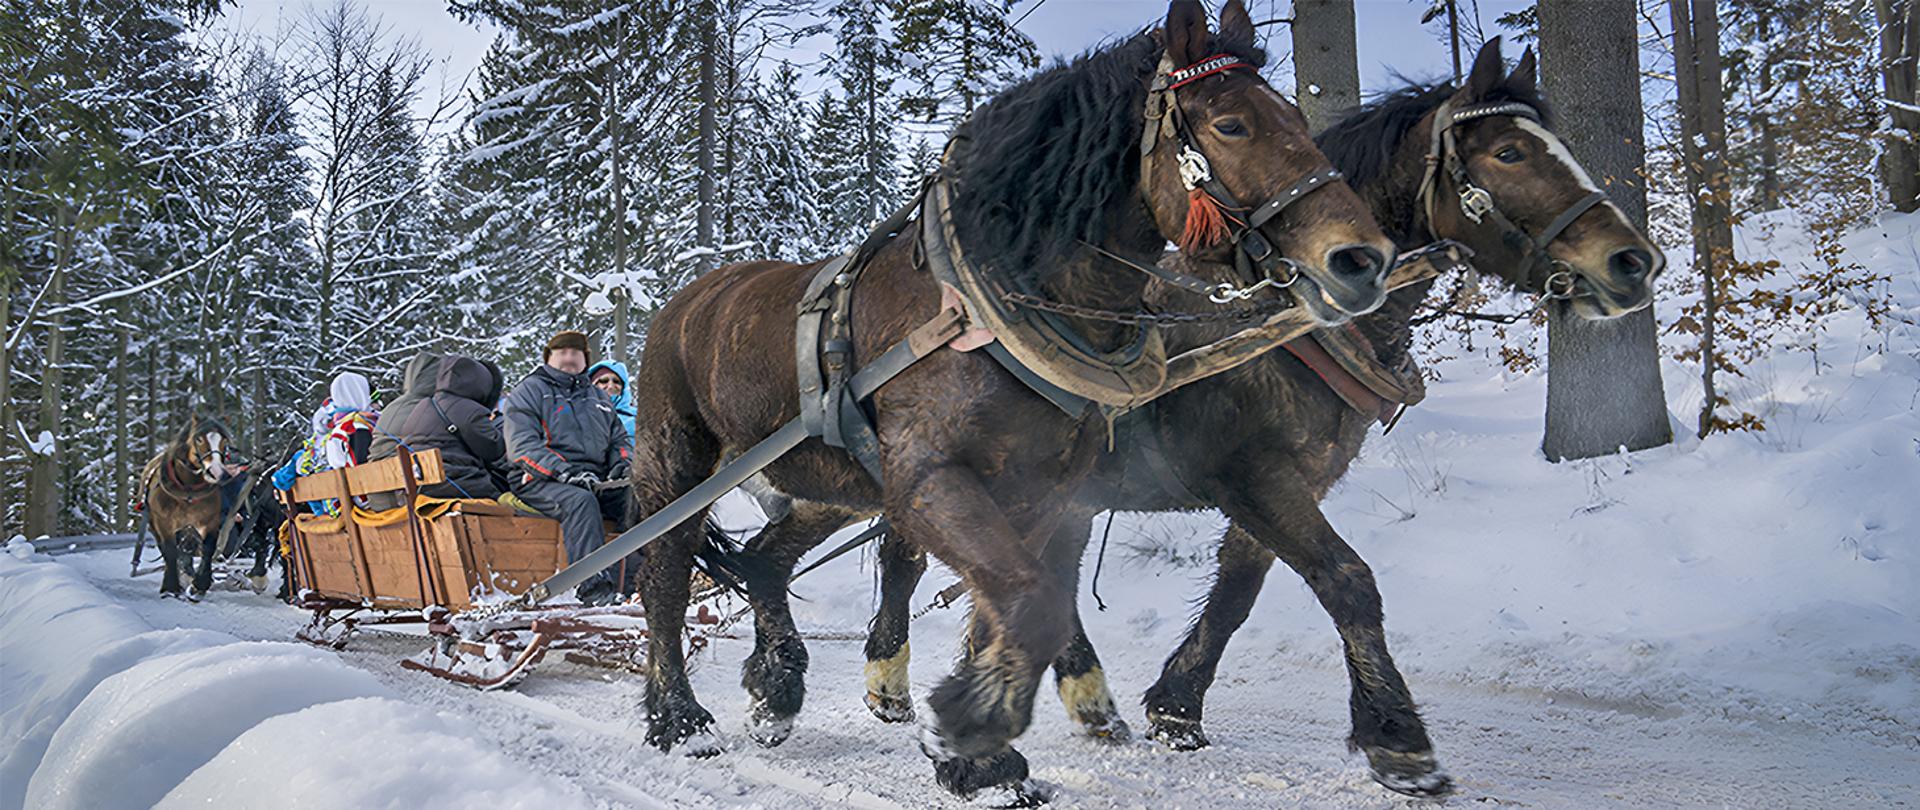 Dwa brązowe konie ciągnące sanie z ludźmi na zaśnieżonej leśnej drodze